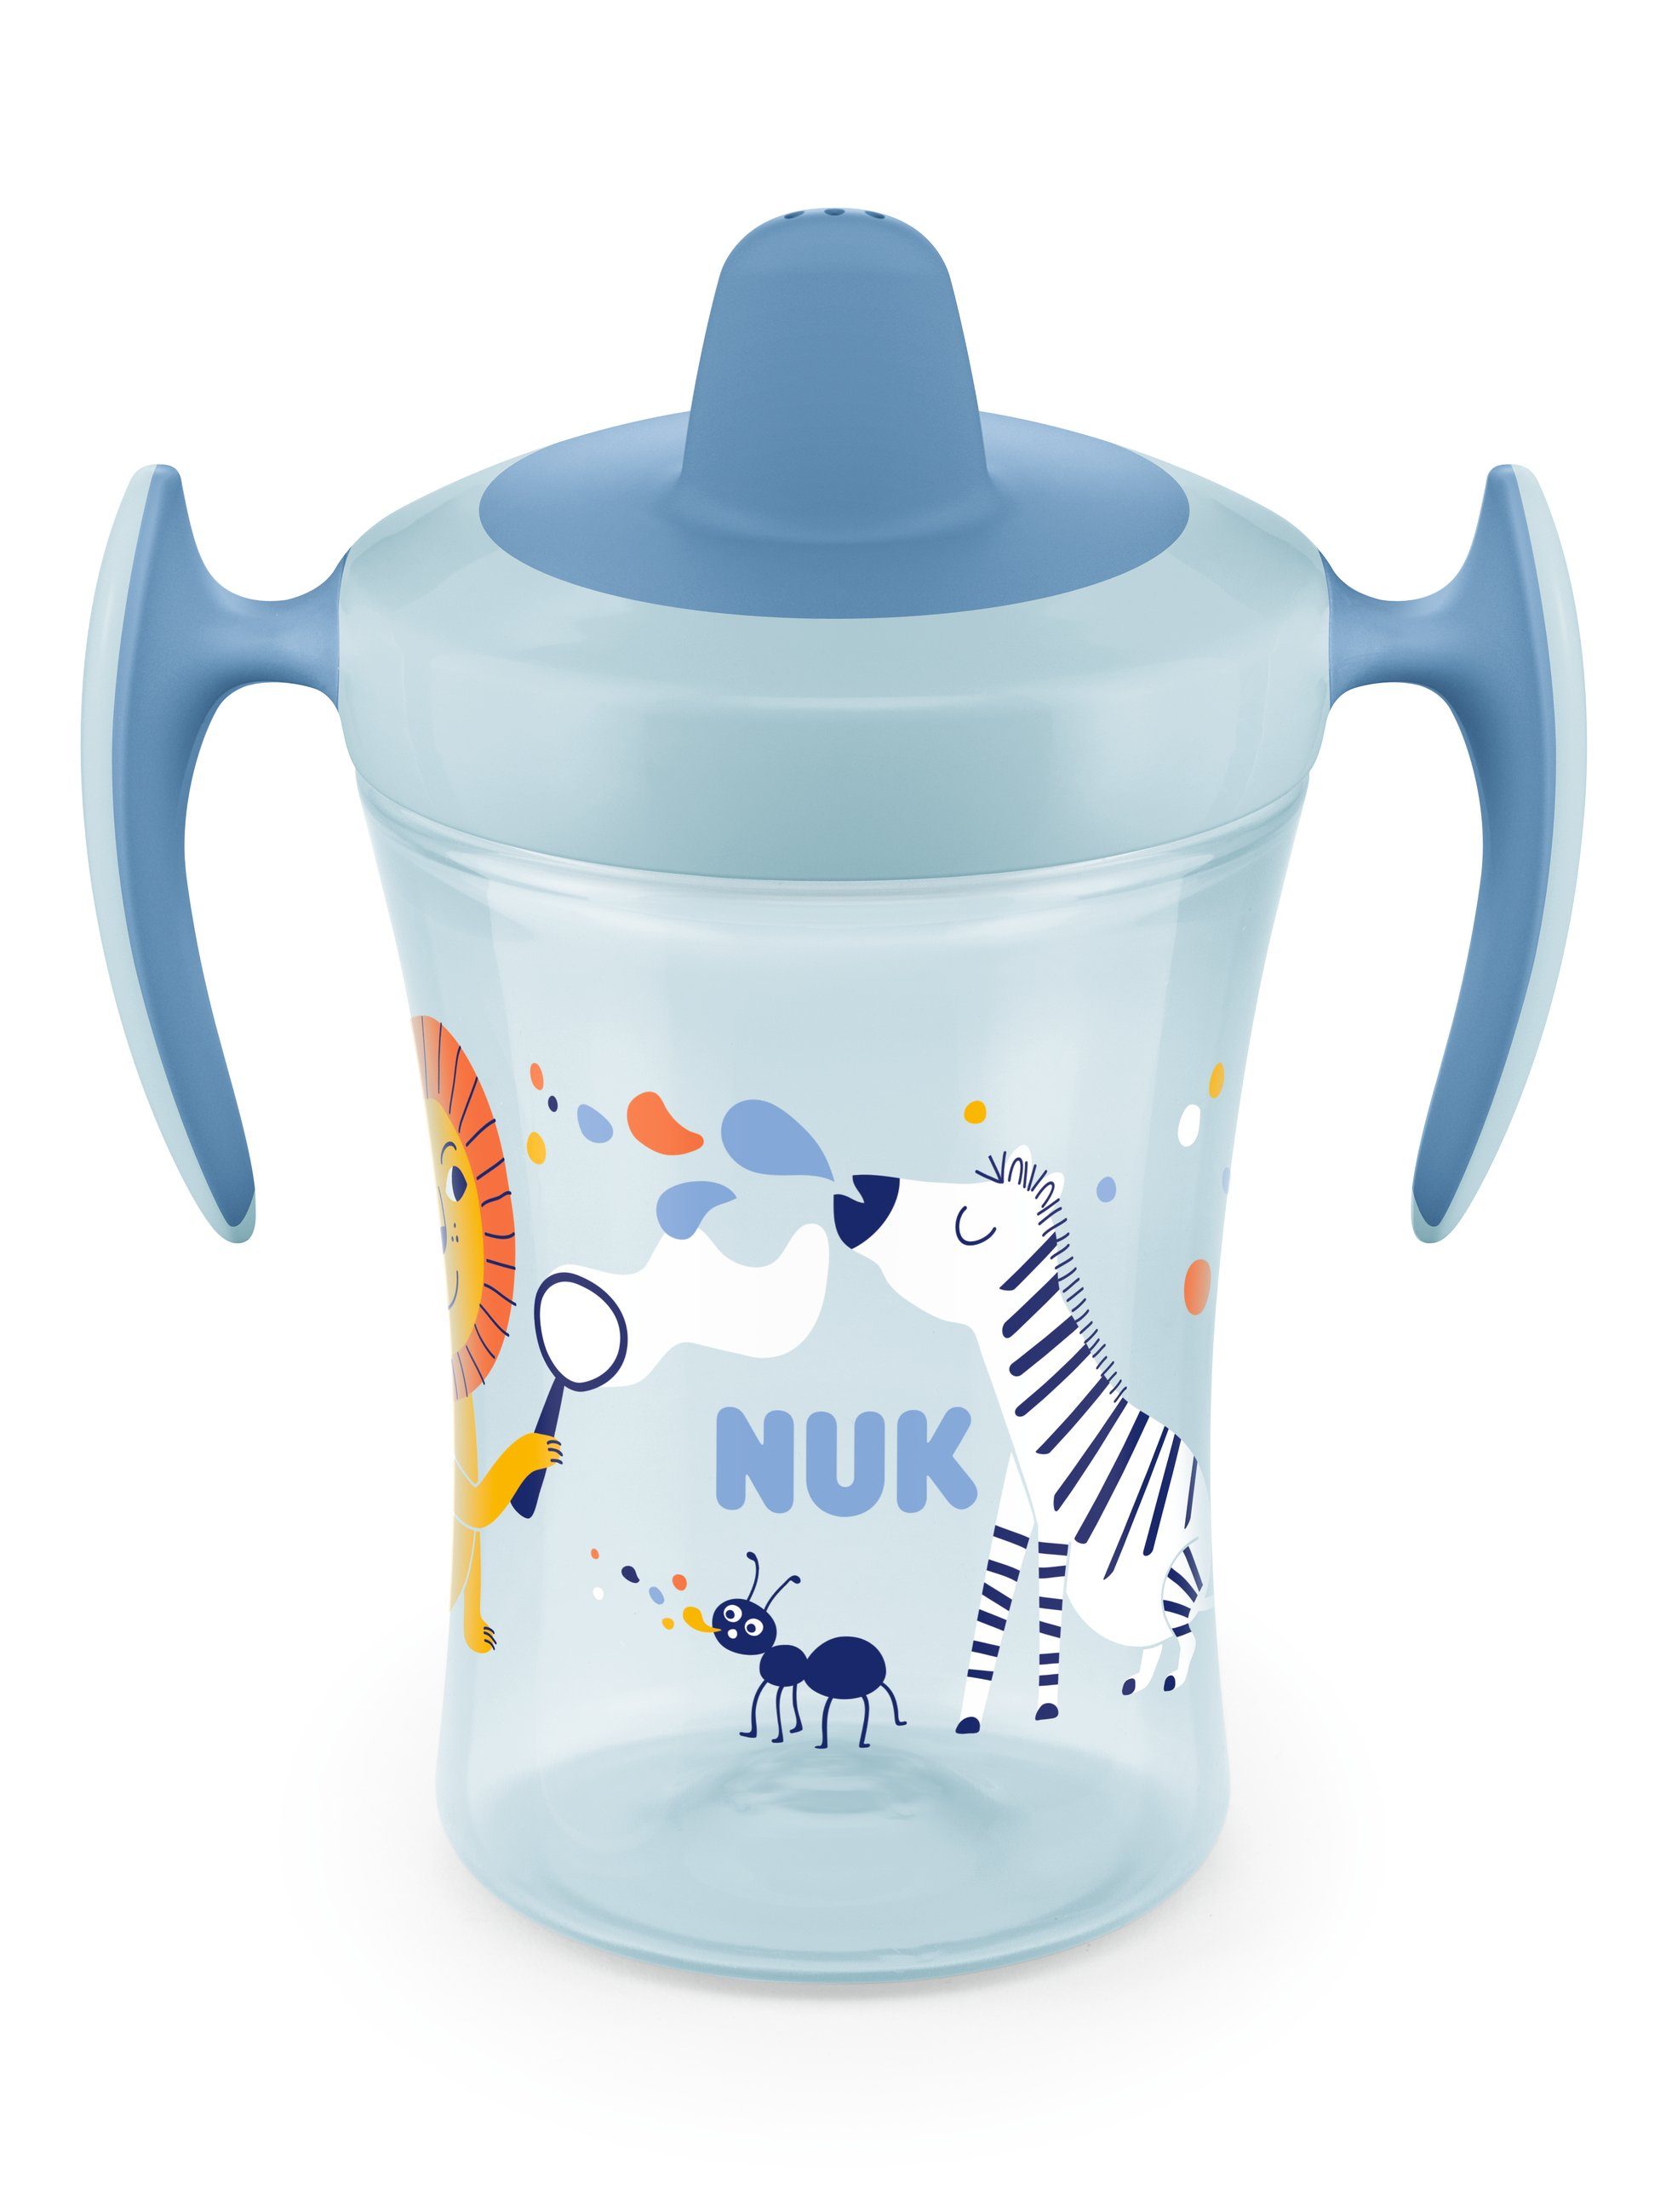 [Super Sonderverkauf durchgeführt! ] NUK Babyflasche NUK ab 10255608, Monaten, Trainer BPA auslaufsicher, 6 Cup 230ml